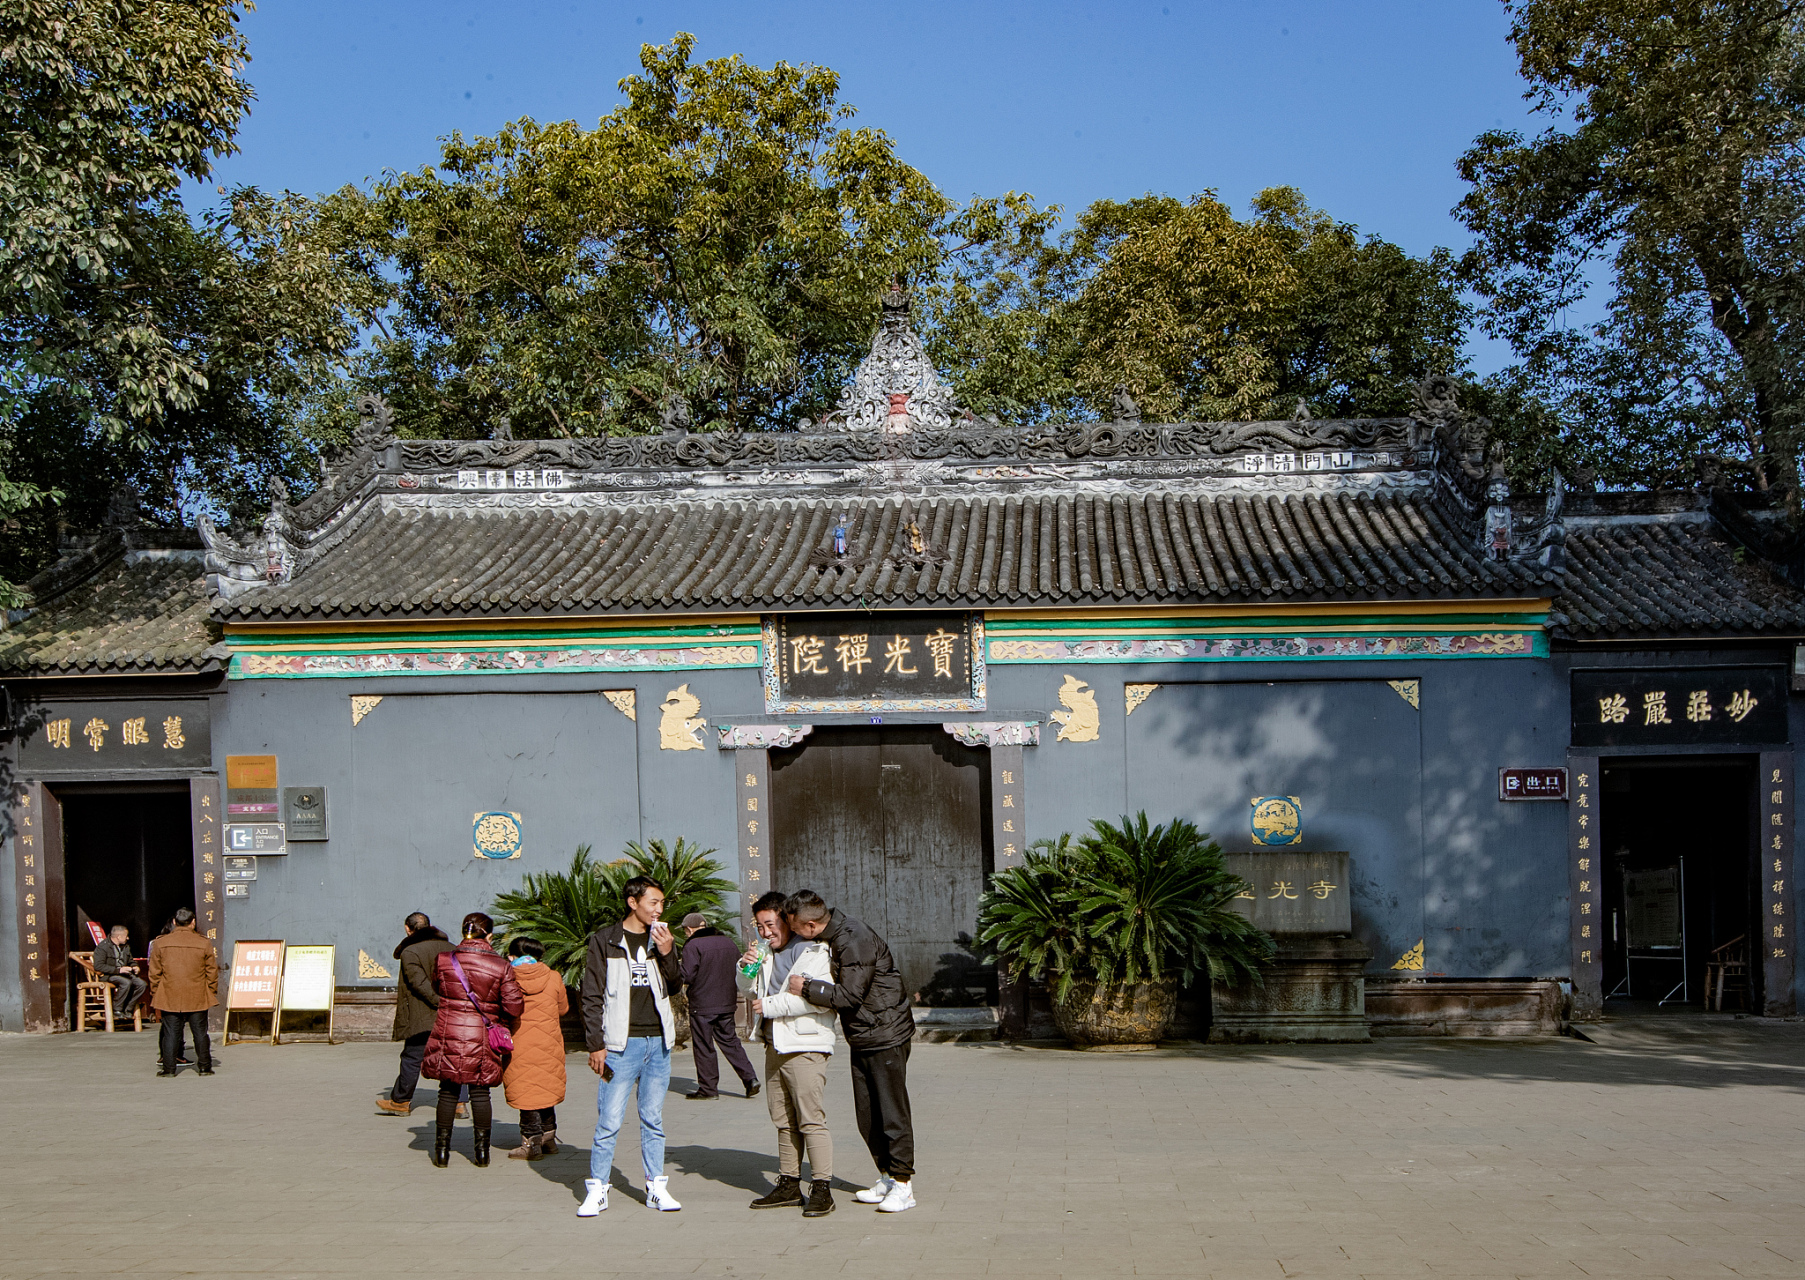 五一游重庆:松林坡戴公祠与迴龙寺探寻古迹,特色小吃品味地道风情